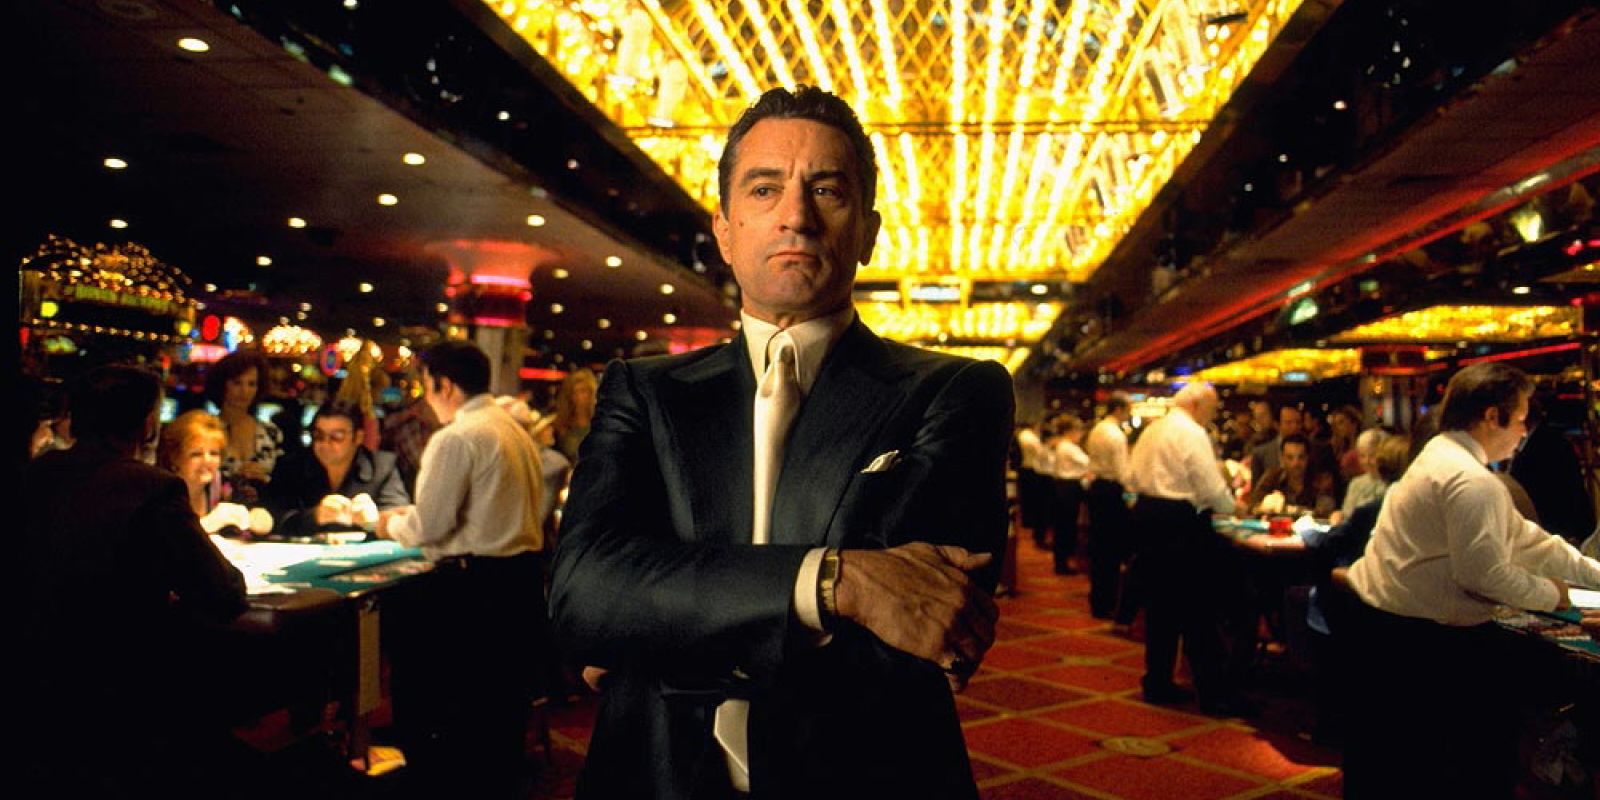 Robert De Niro standing in a casino